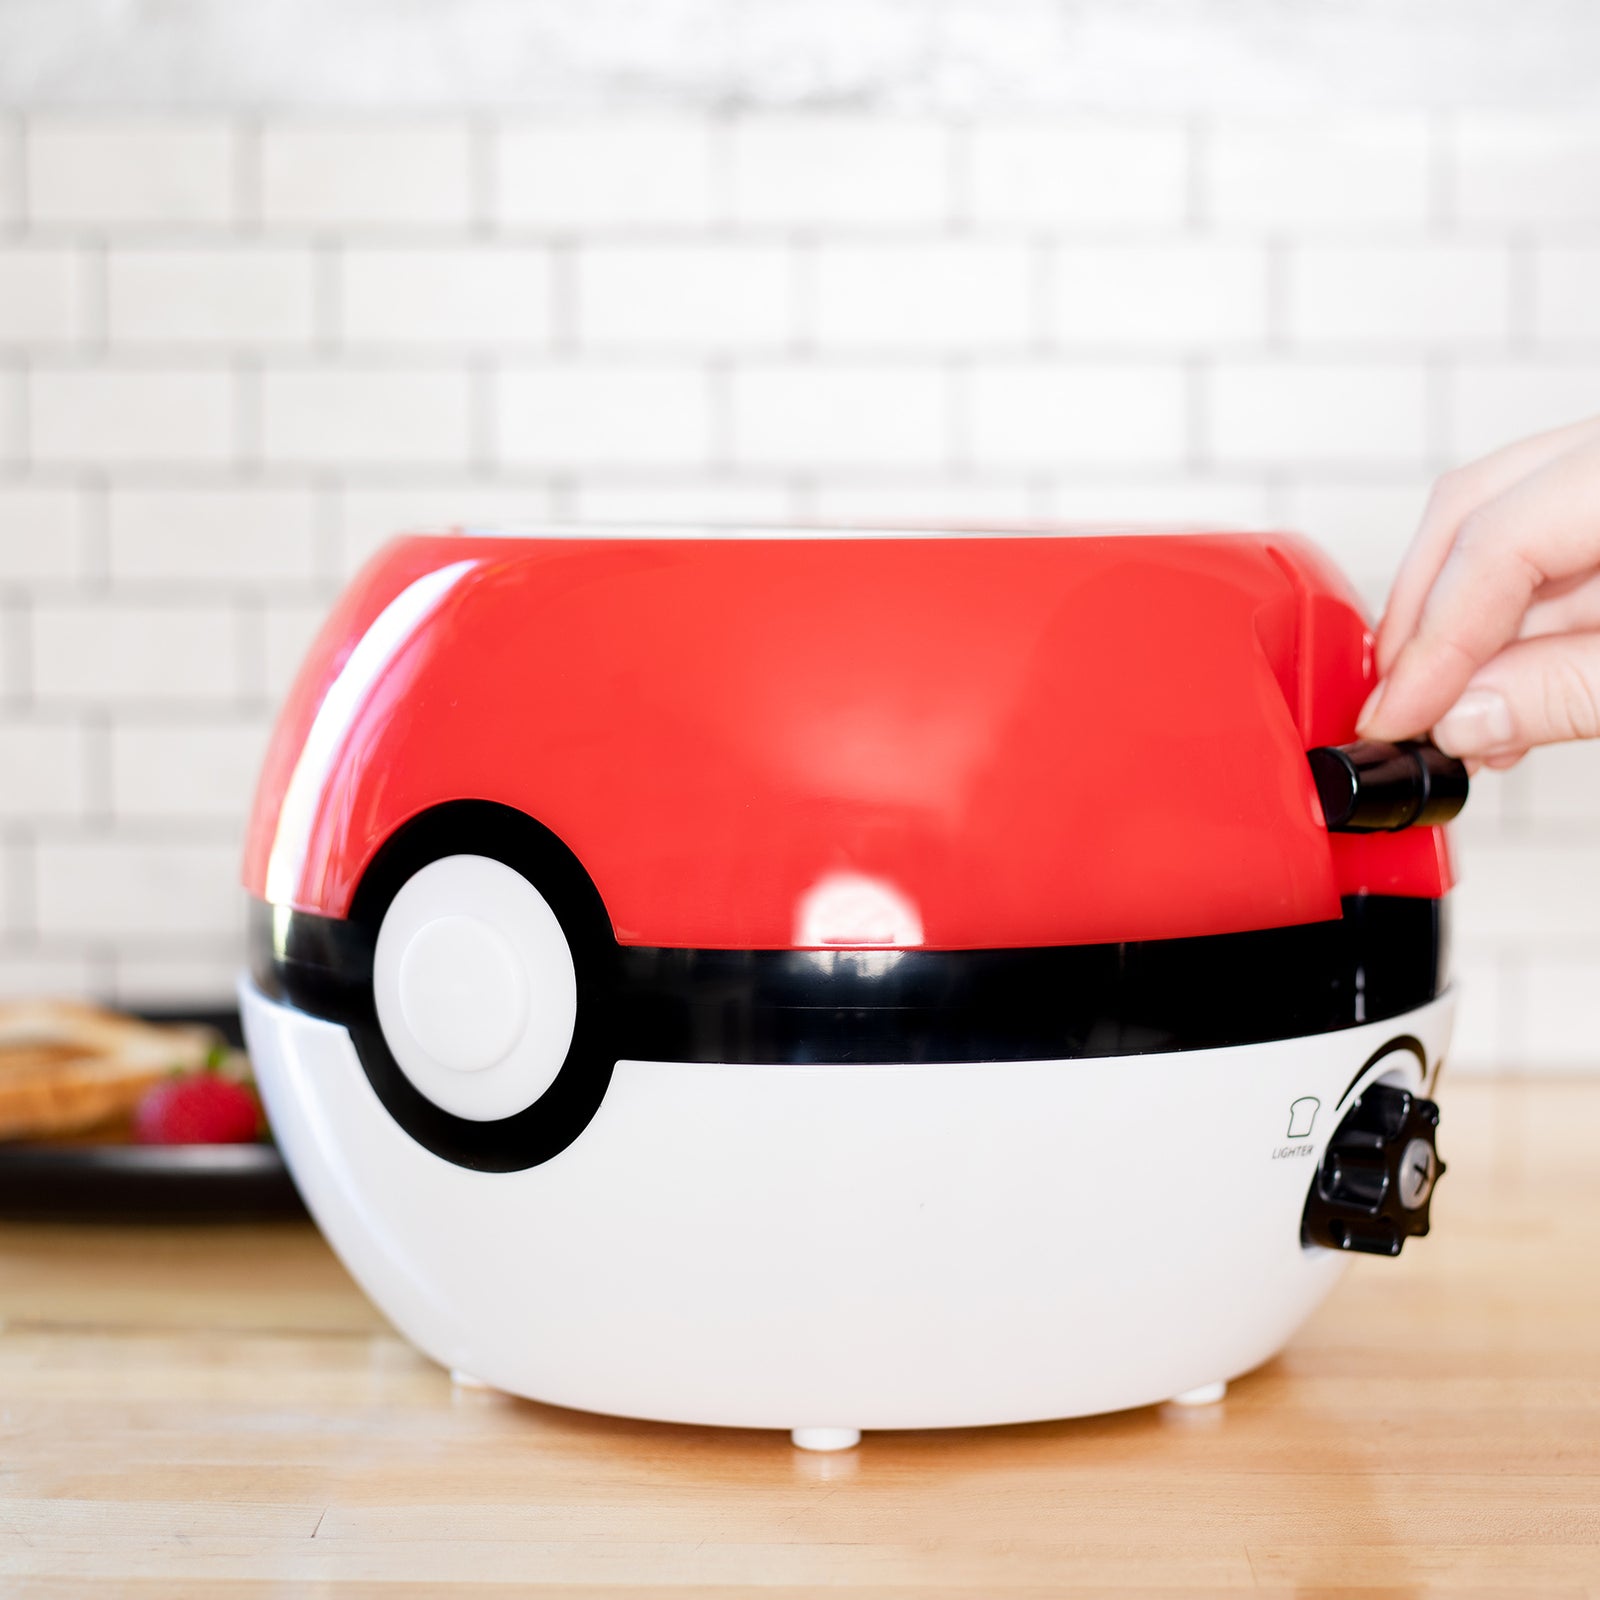 Uncanny Brands Pokémon Pokeball Popcorn Maker- Pokémon Kitchen Appliance